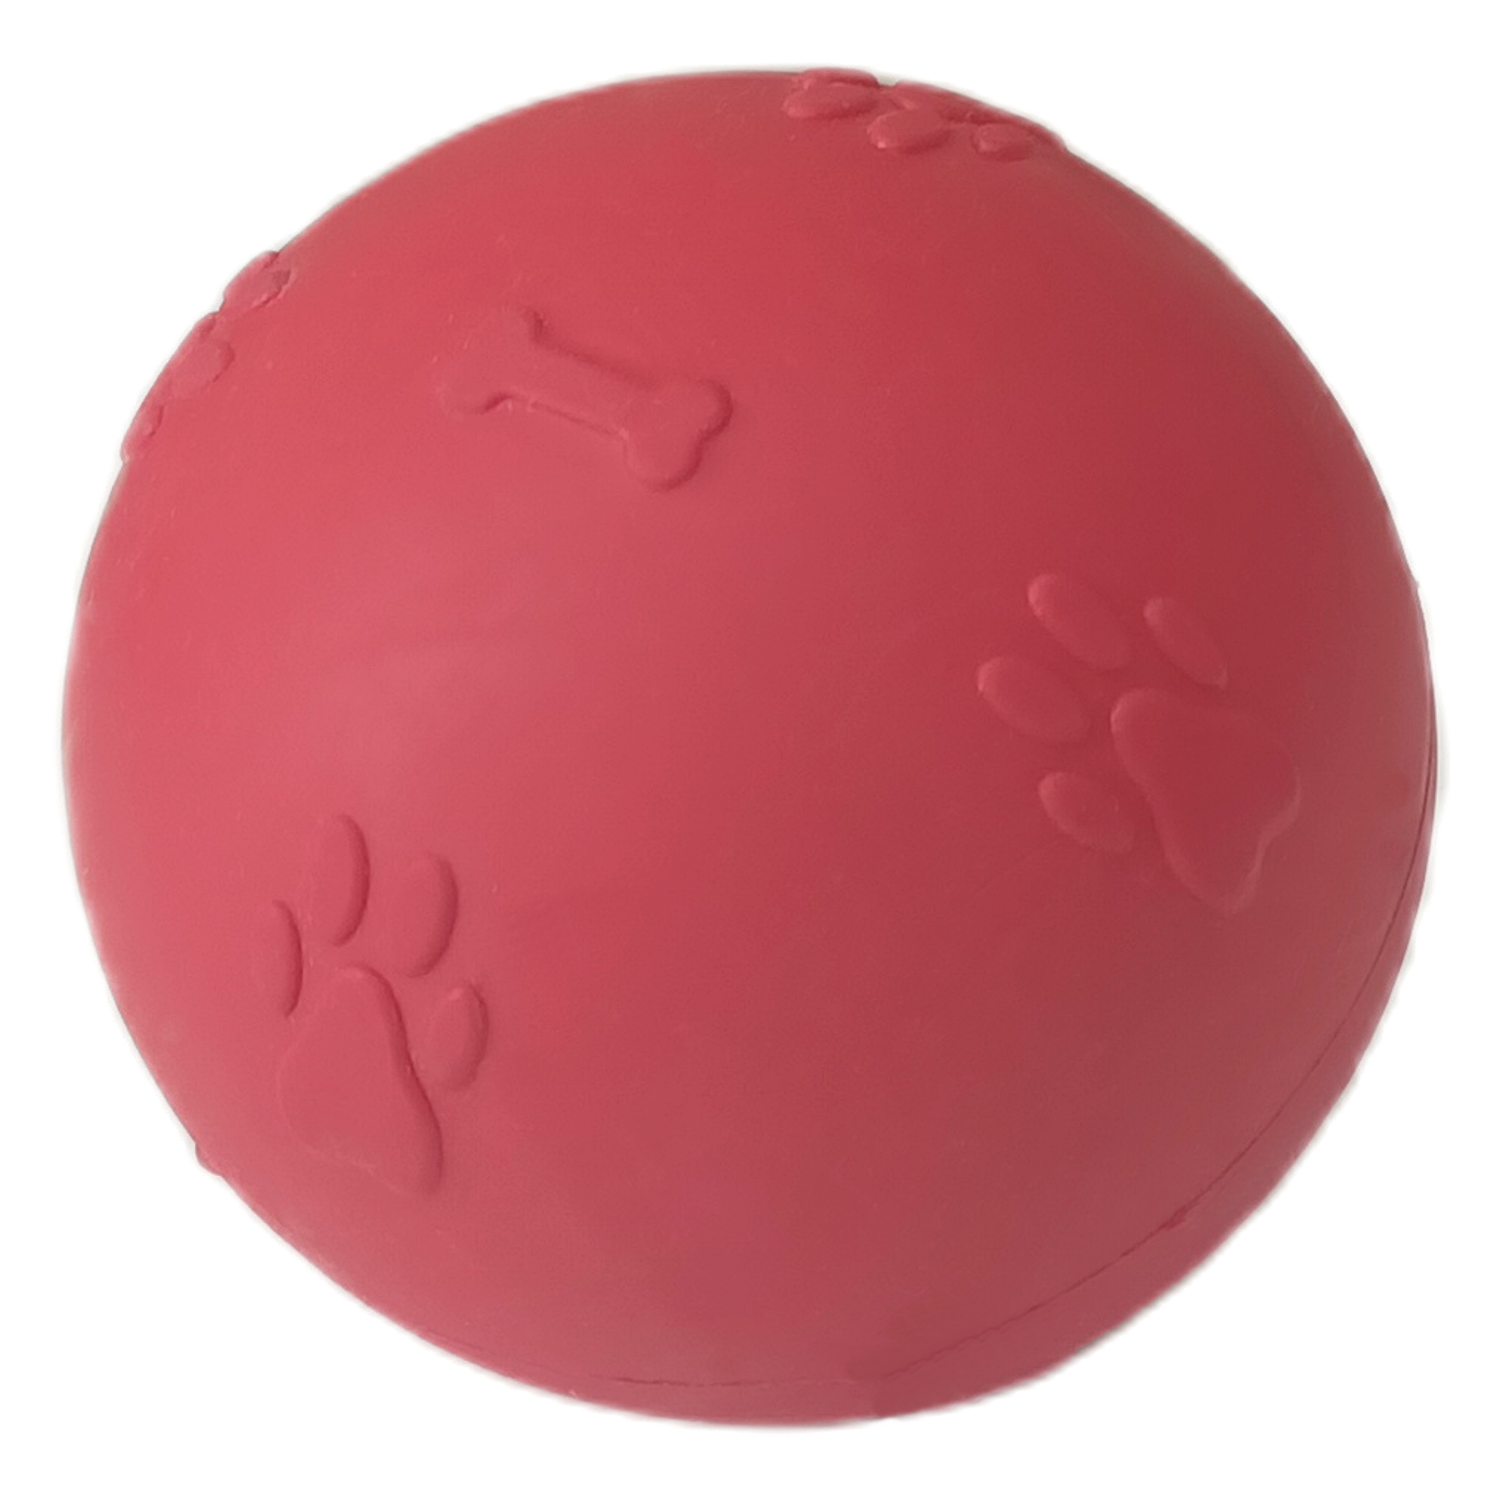 CLZ205 Pati Desenli Sert Köpek Oyun Topu 6 cm Small Kırmızı